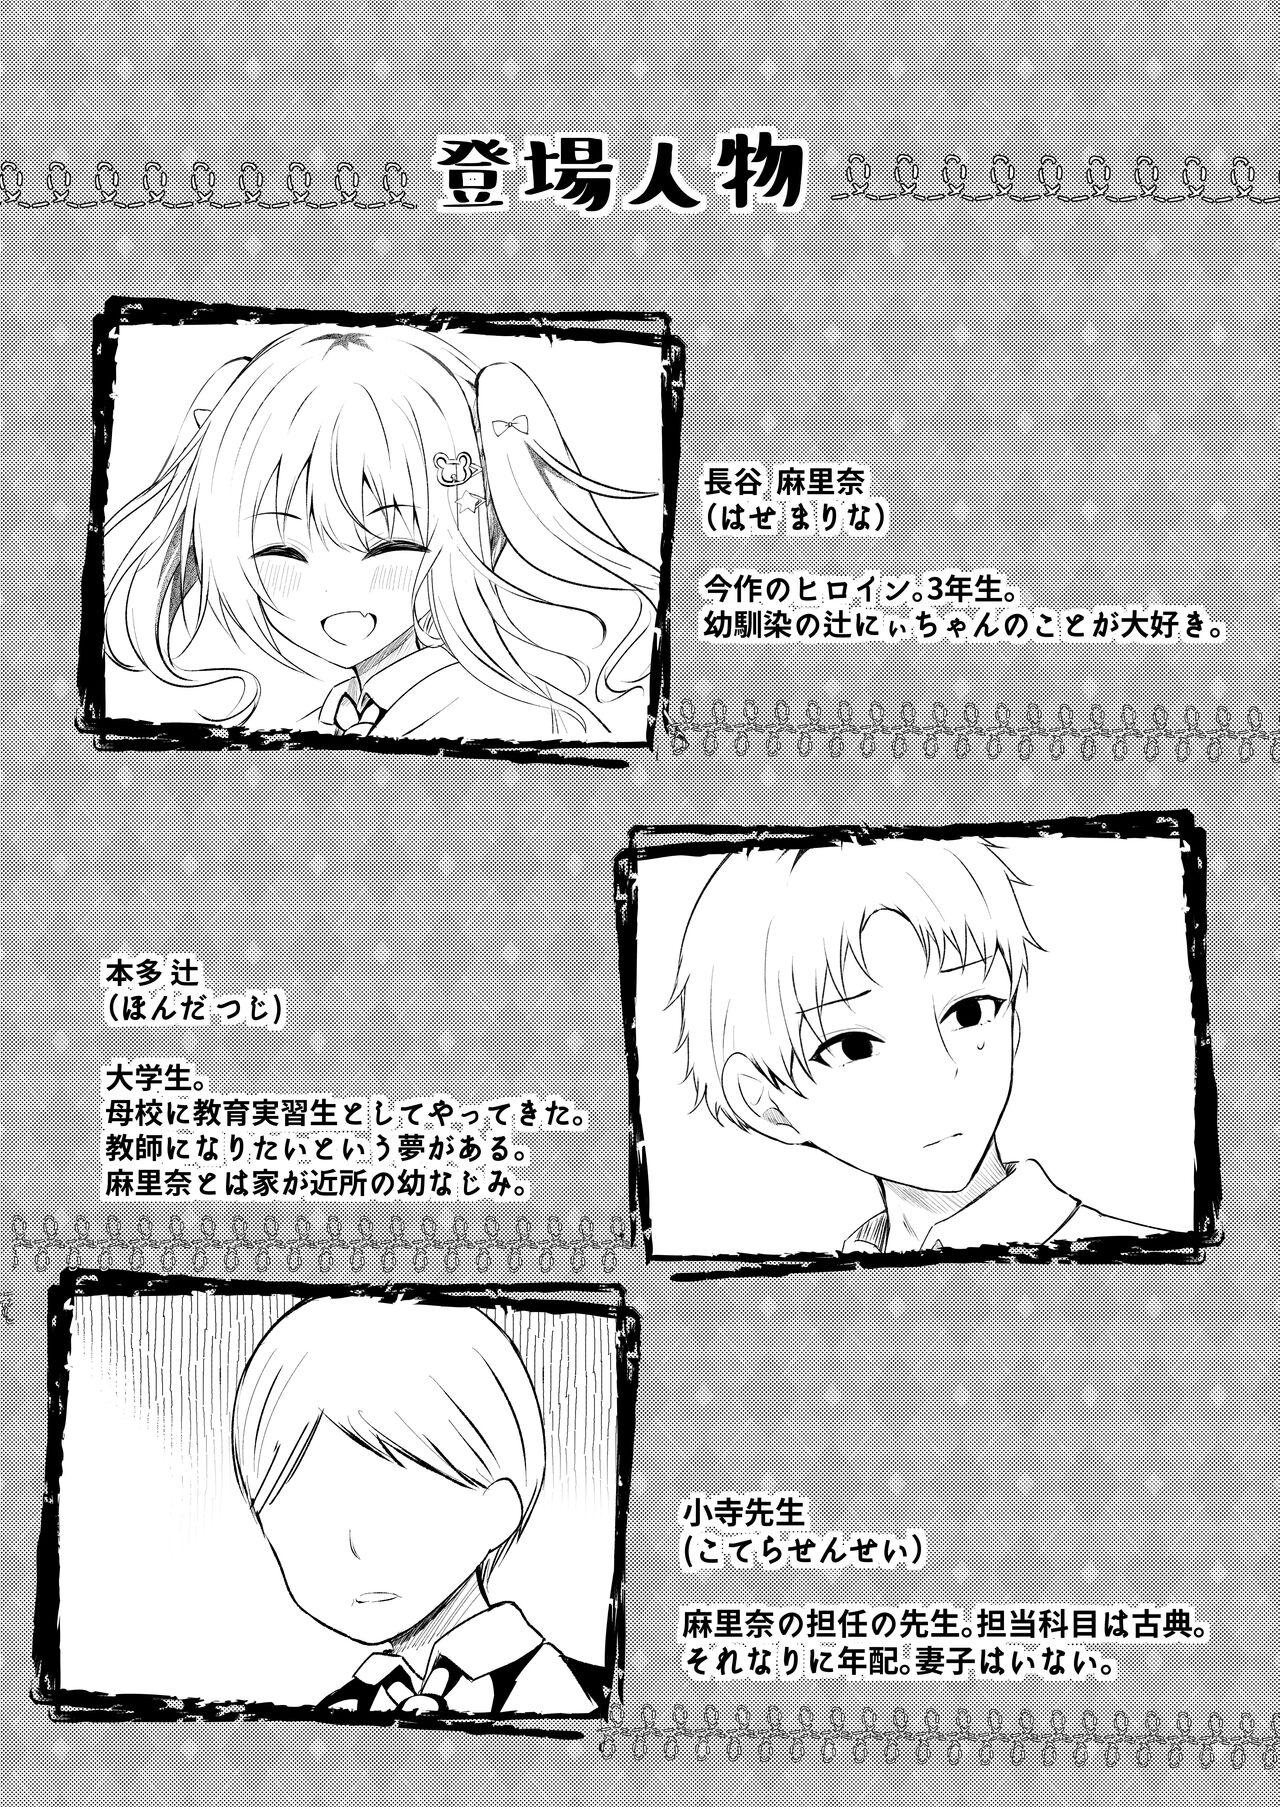 Rub Onii-chan no Yume no Tame ni - Original Sapphicerotica - Page 3